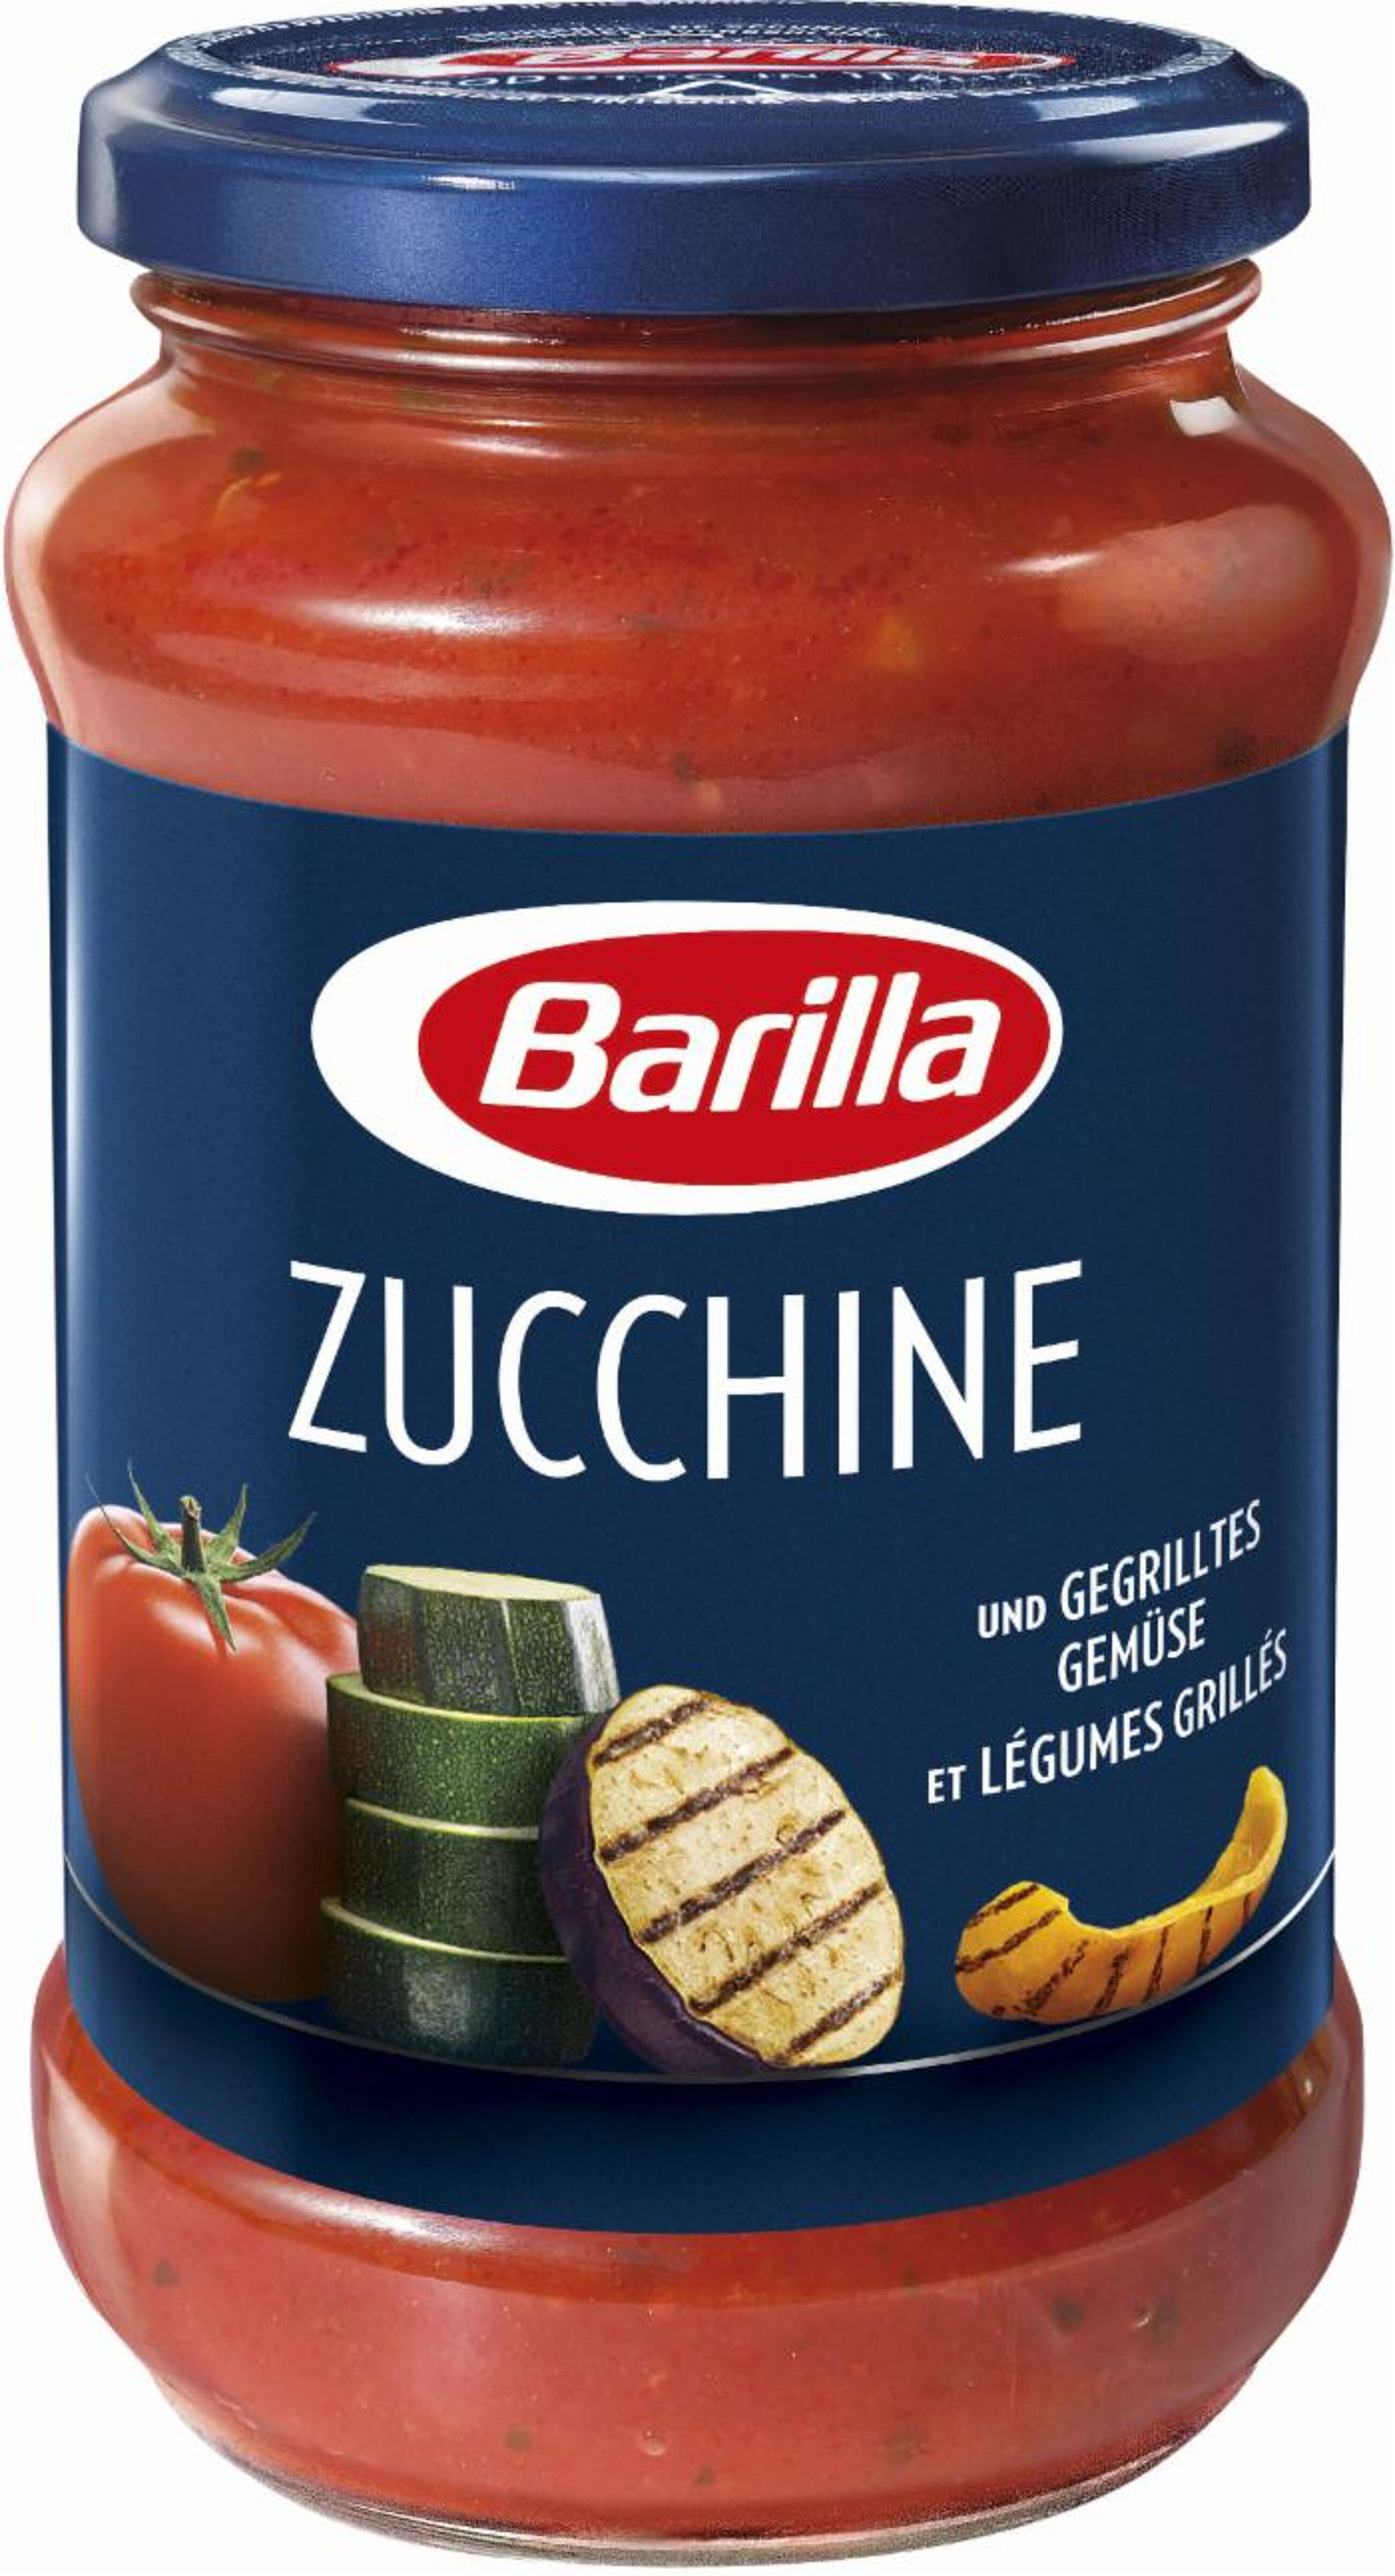 Zucchine et légumes grillés - Product - fr